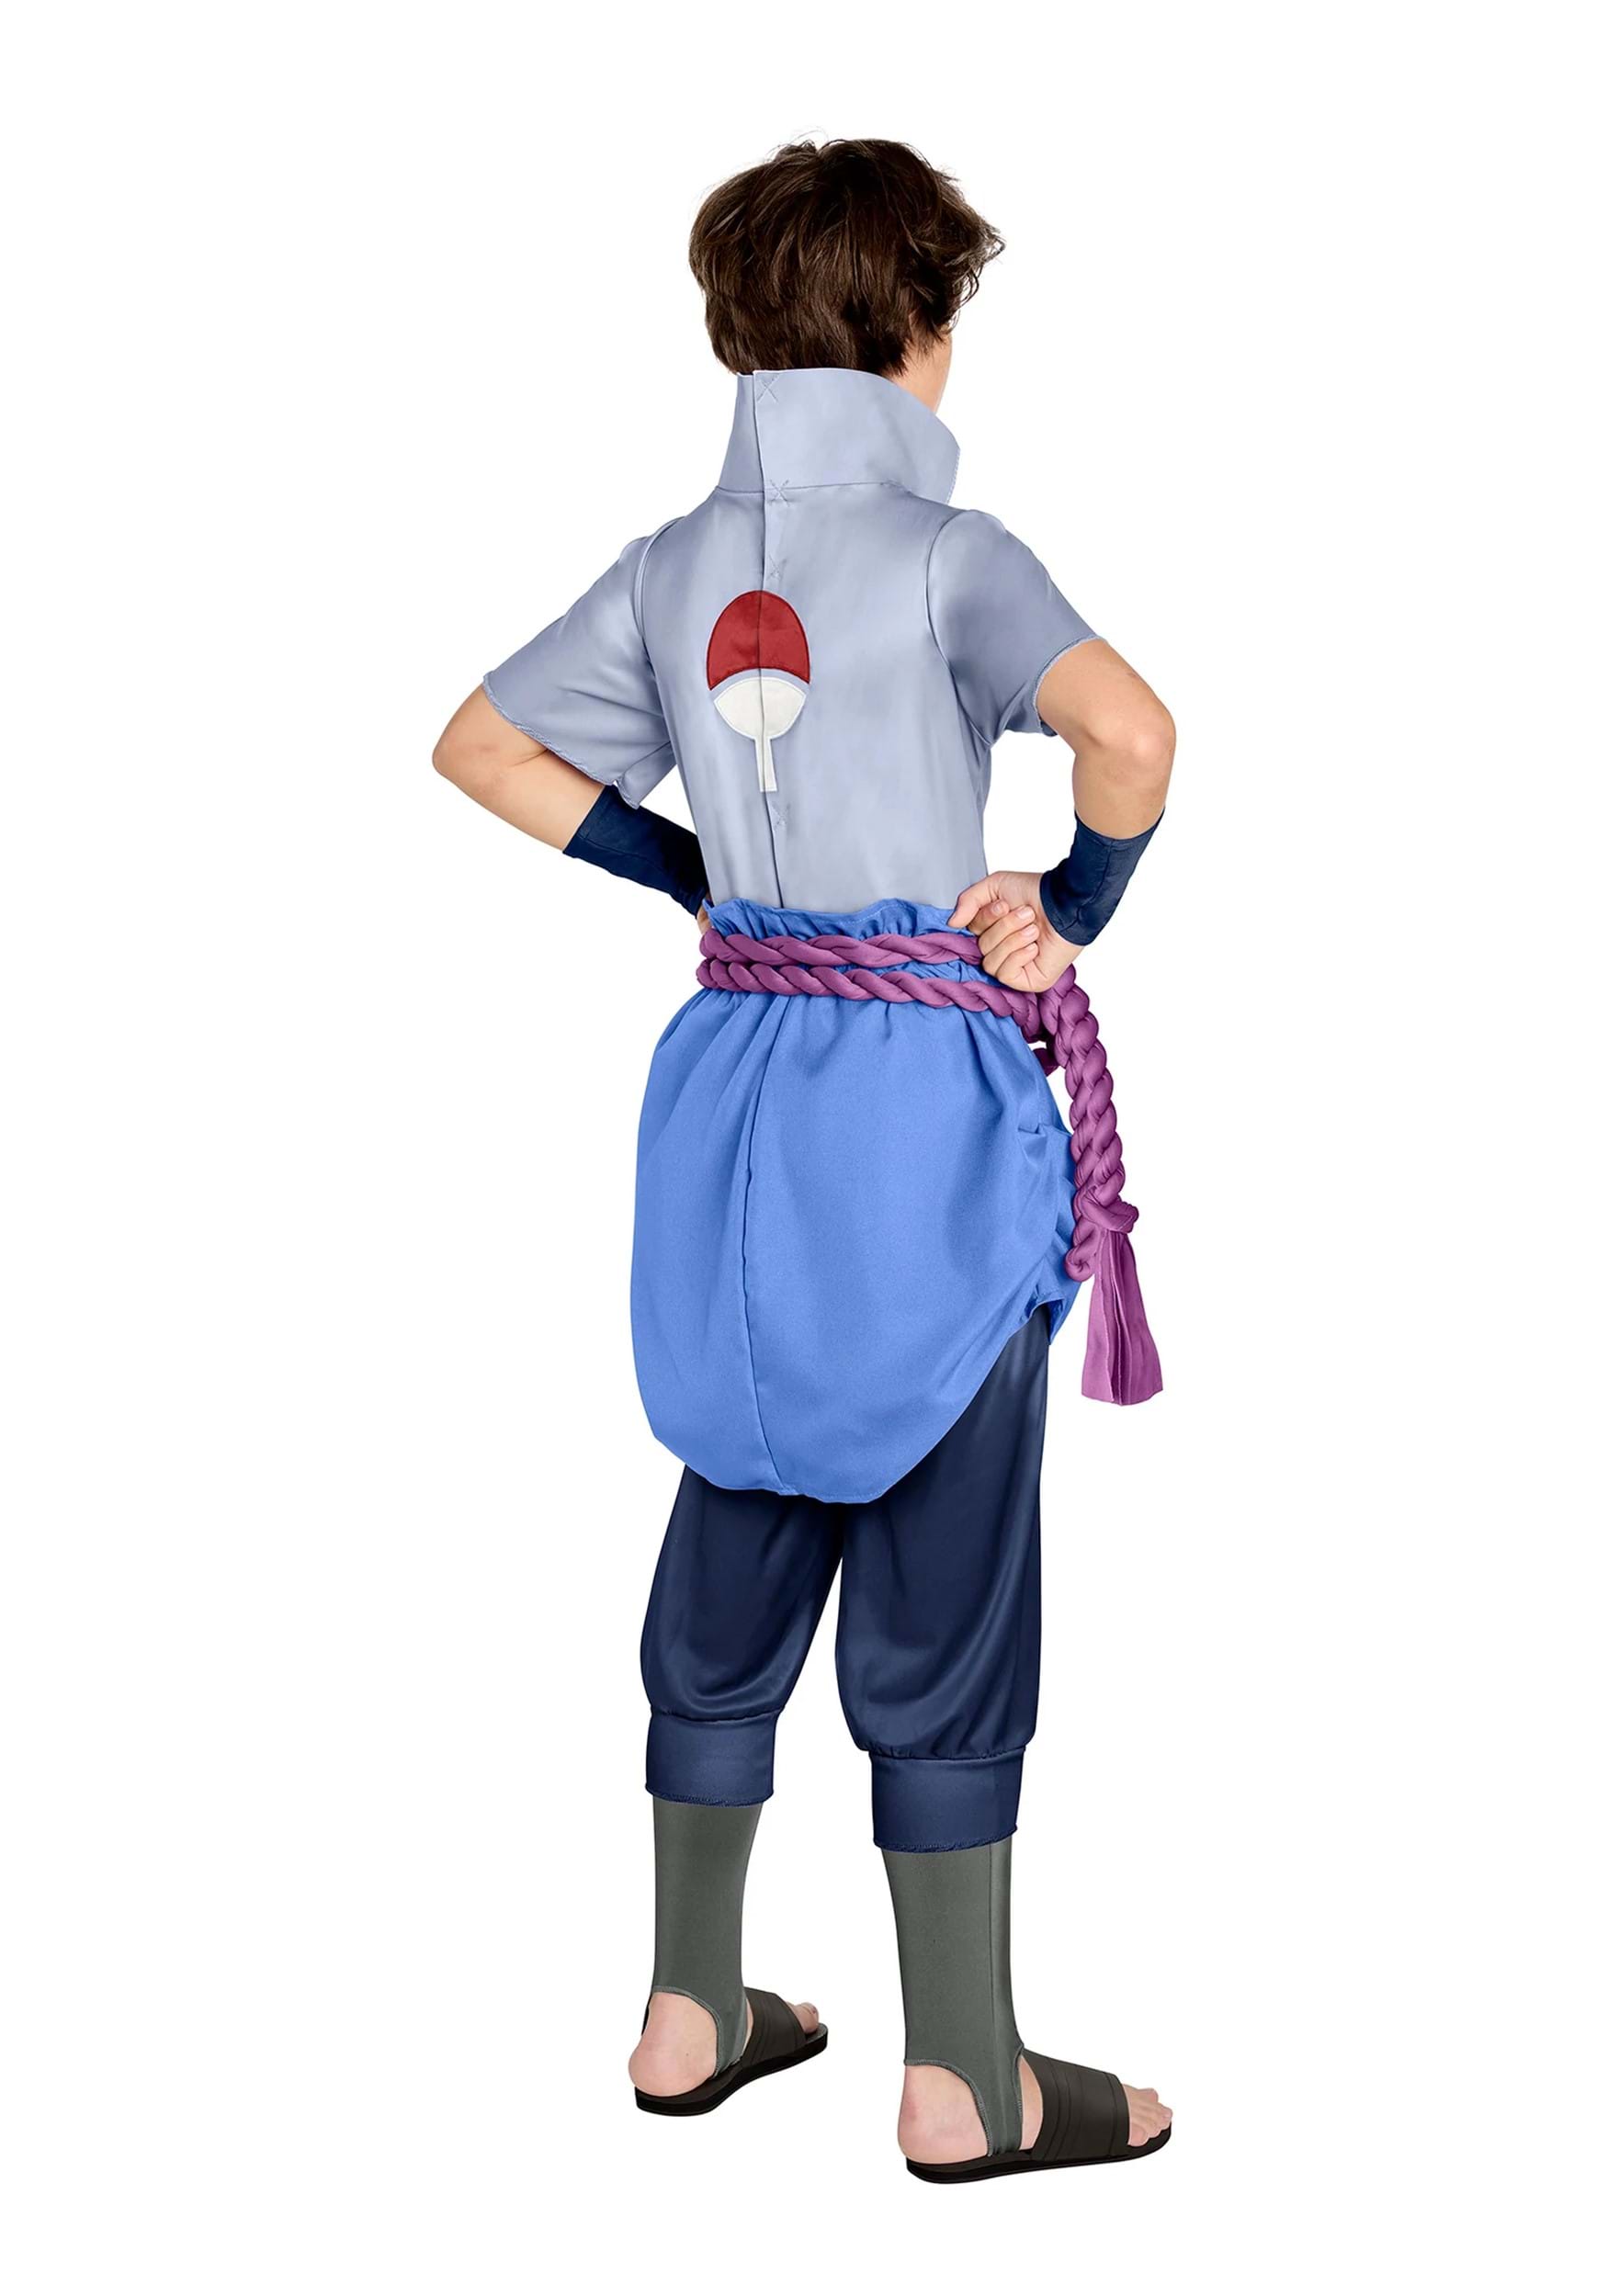 The costumes of Sasuke Uchiha